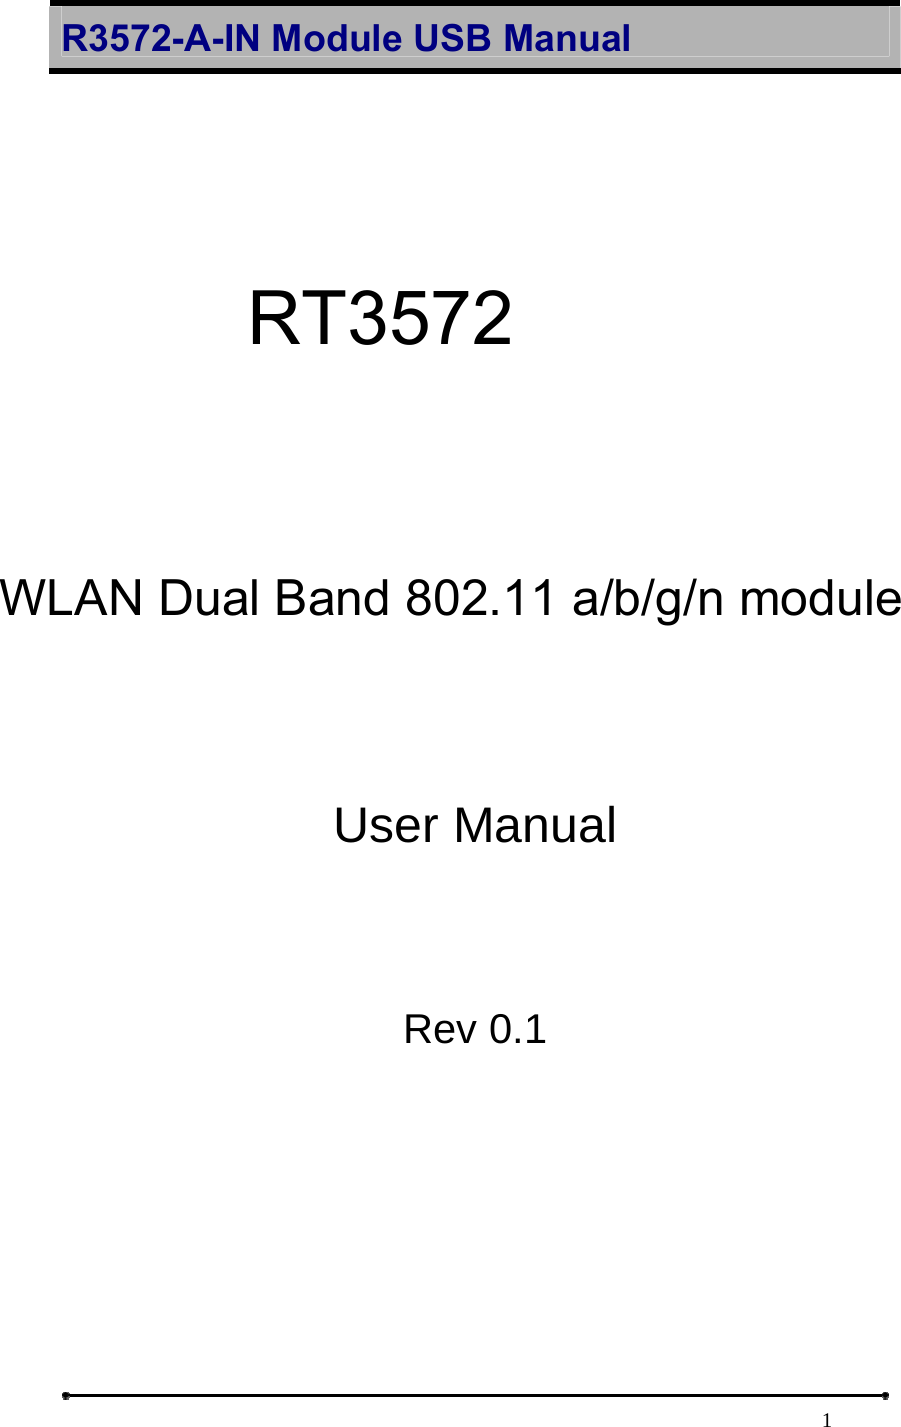 R3572-A-IN Module USB Manual                                                                            1  RT3572-A-IN   Wireless 802.11N Dual-band USB Module   User Manual   Rev 0.1     RT3572 WLAN Dual Band 802.11 a/b/g/n module  